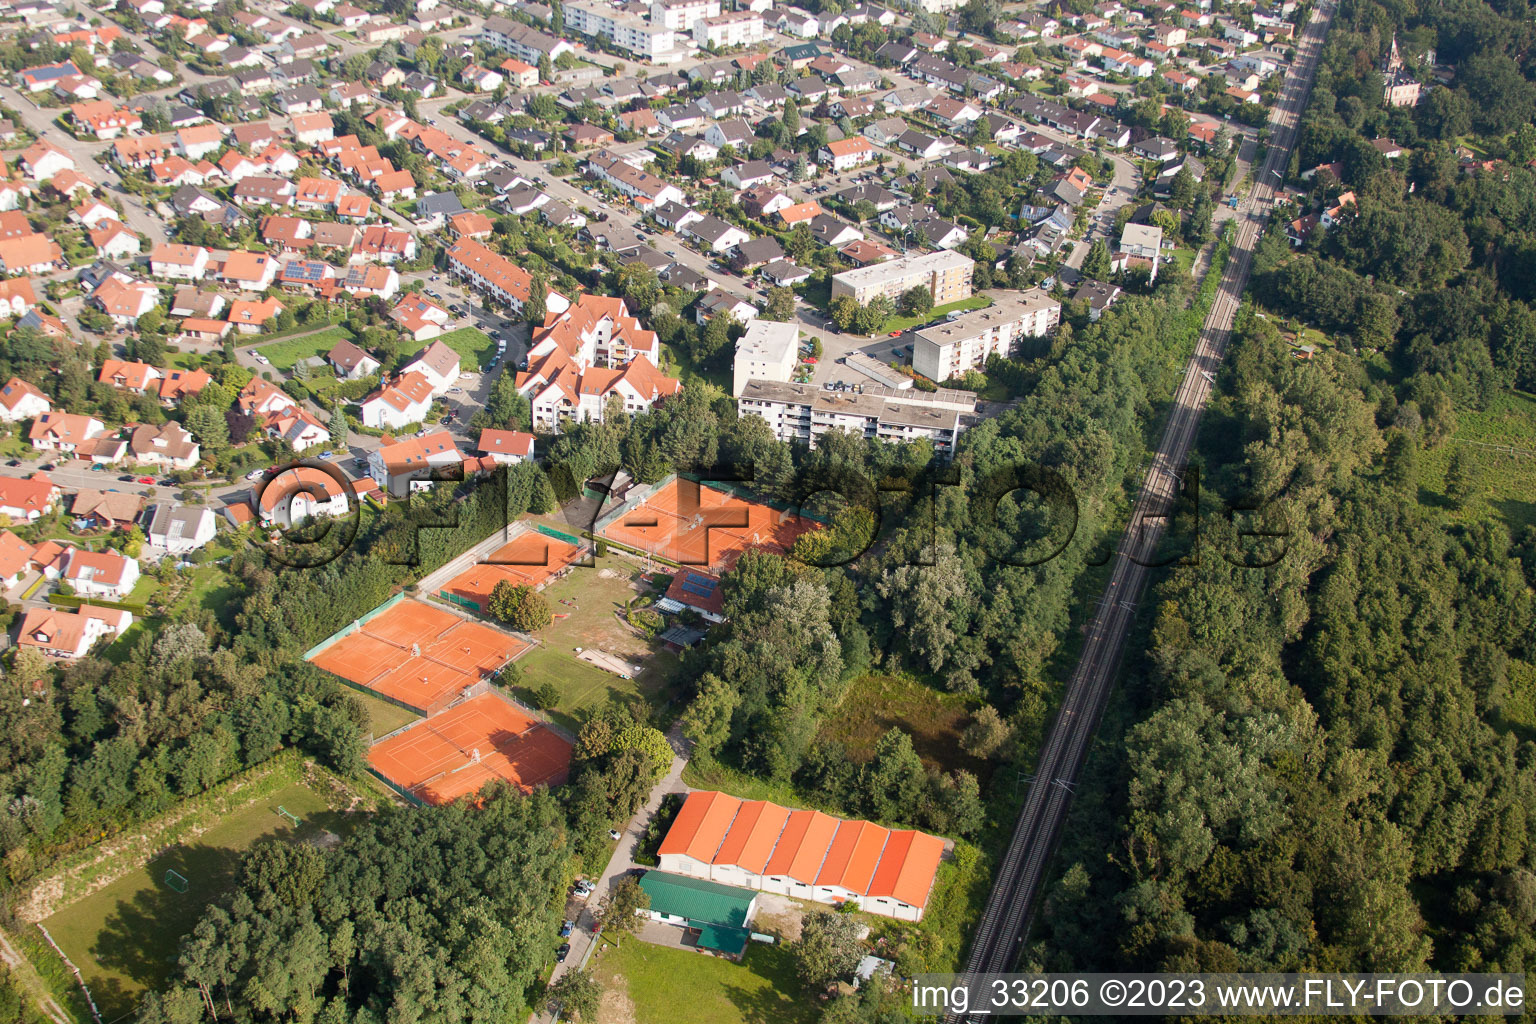 Vue aérienne de Club de tennis à Jockgrim dans le département Rhénanie-Palatinat, Allemagne